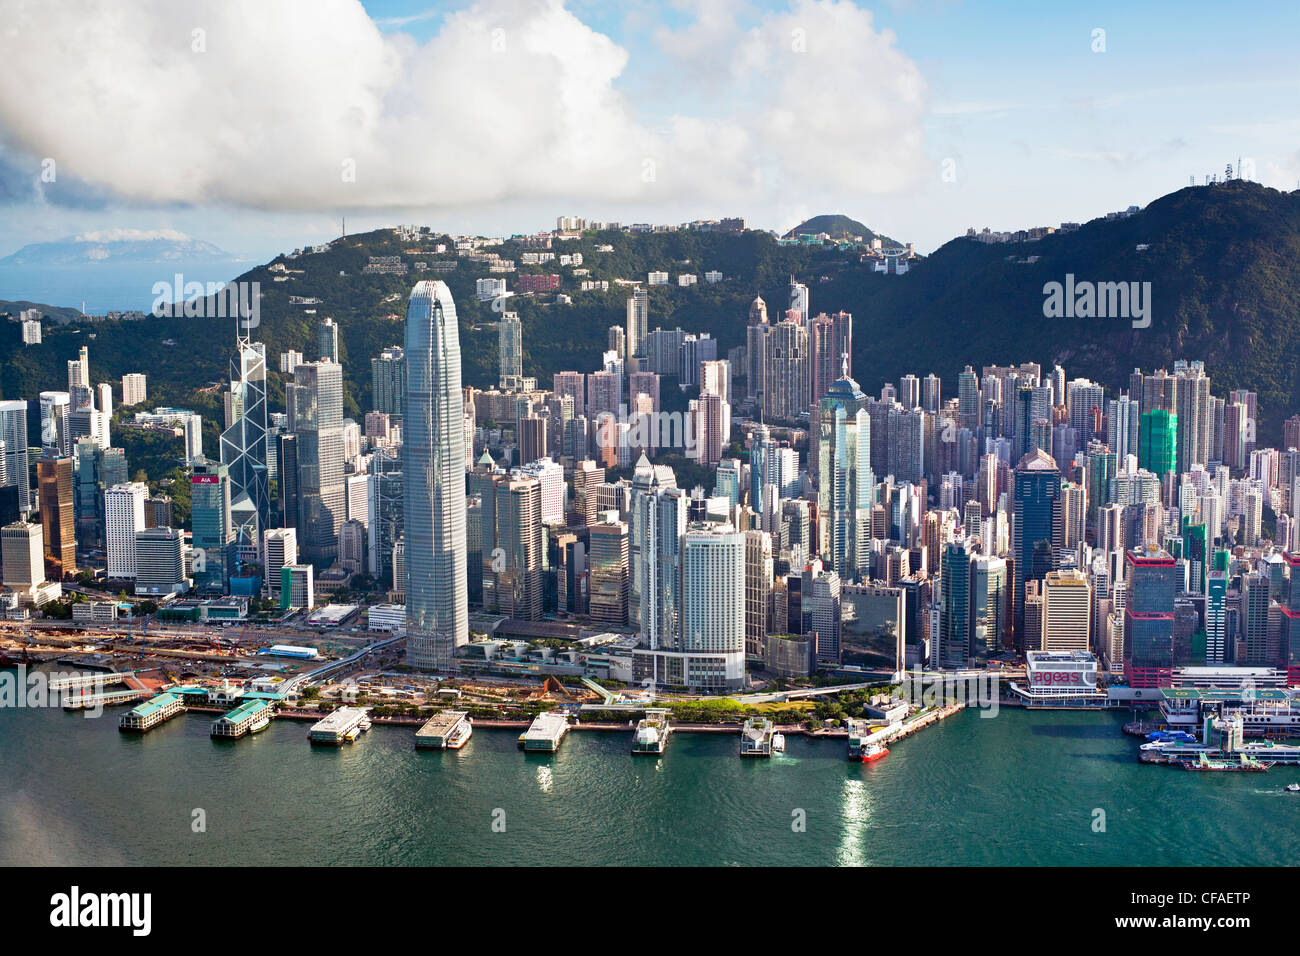 Vista elevada a través del ajetreado puerto de Hong Kong, el distrito central de la isla de Hong Kong y el Pico Victoria, Hong Kong, China Foto de stock